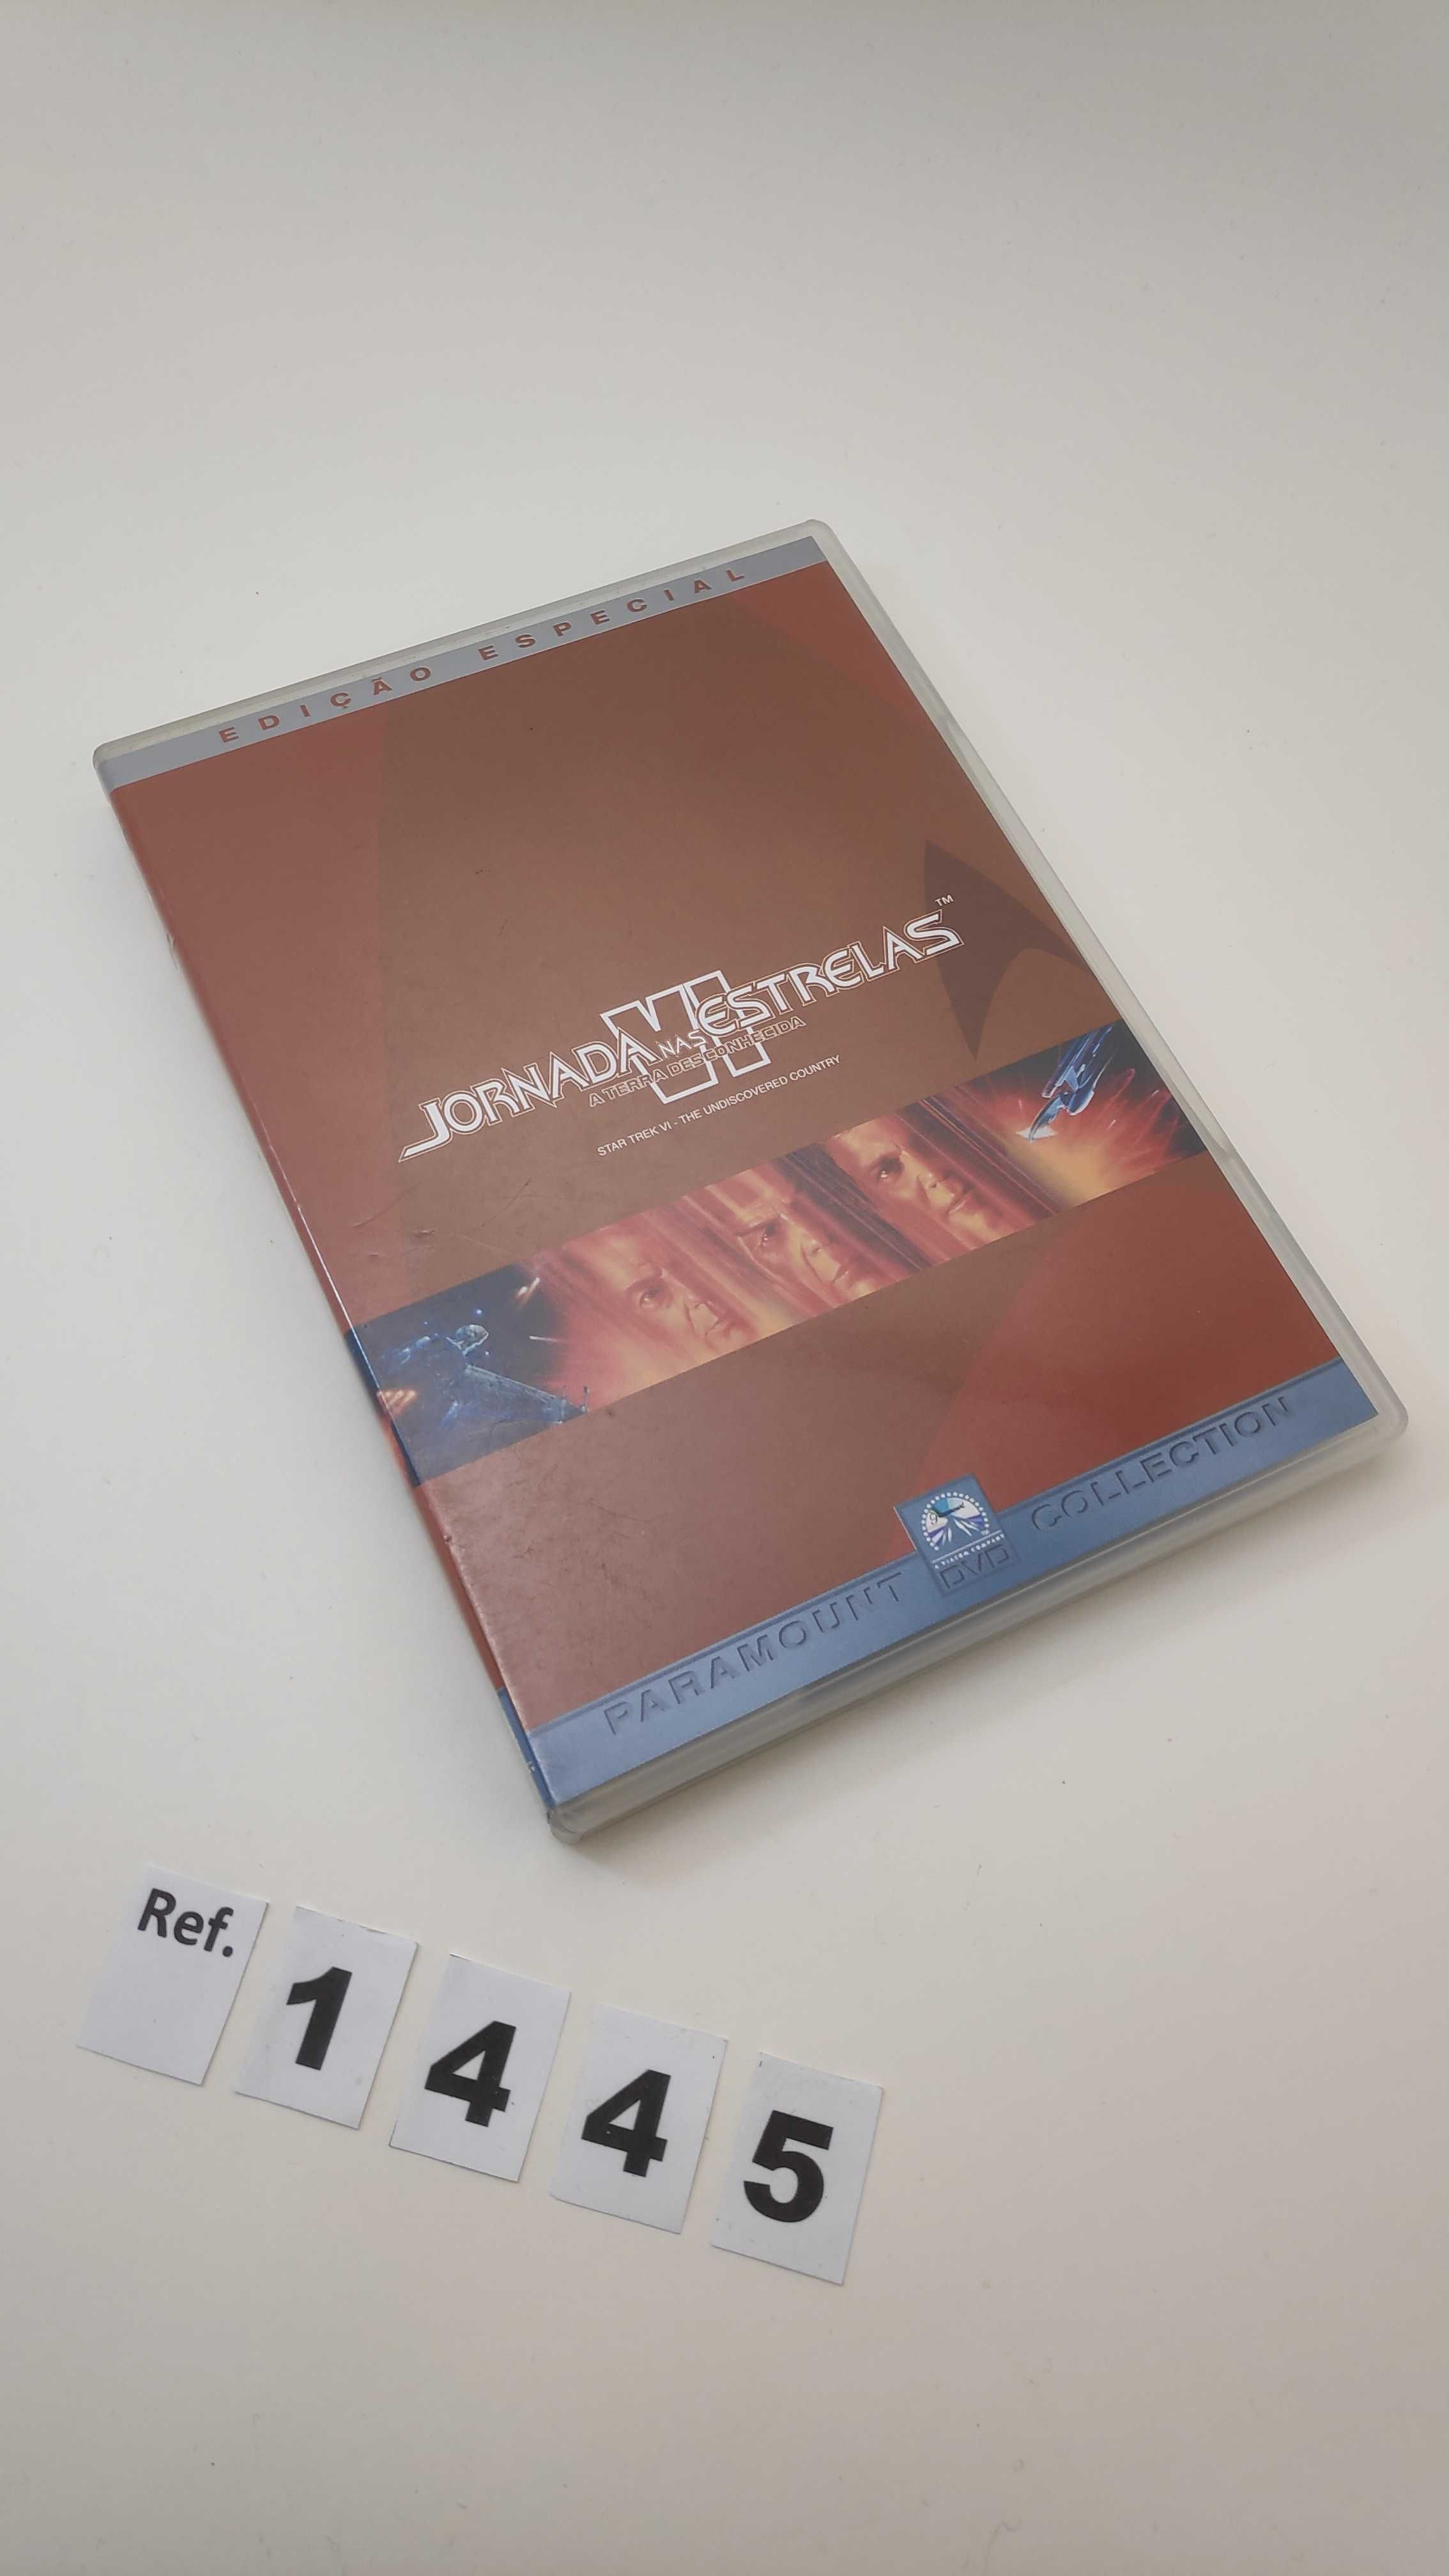 DVD STAR TREK "JORNADA NAS ESTRELAS"